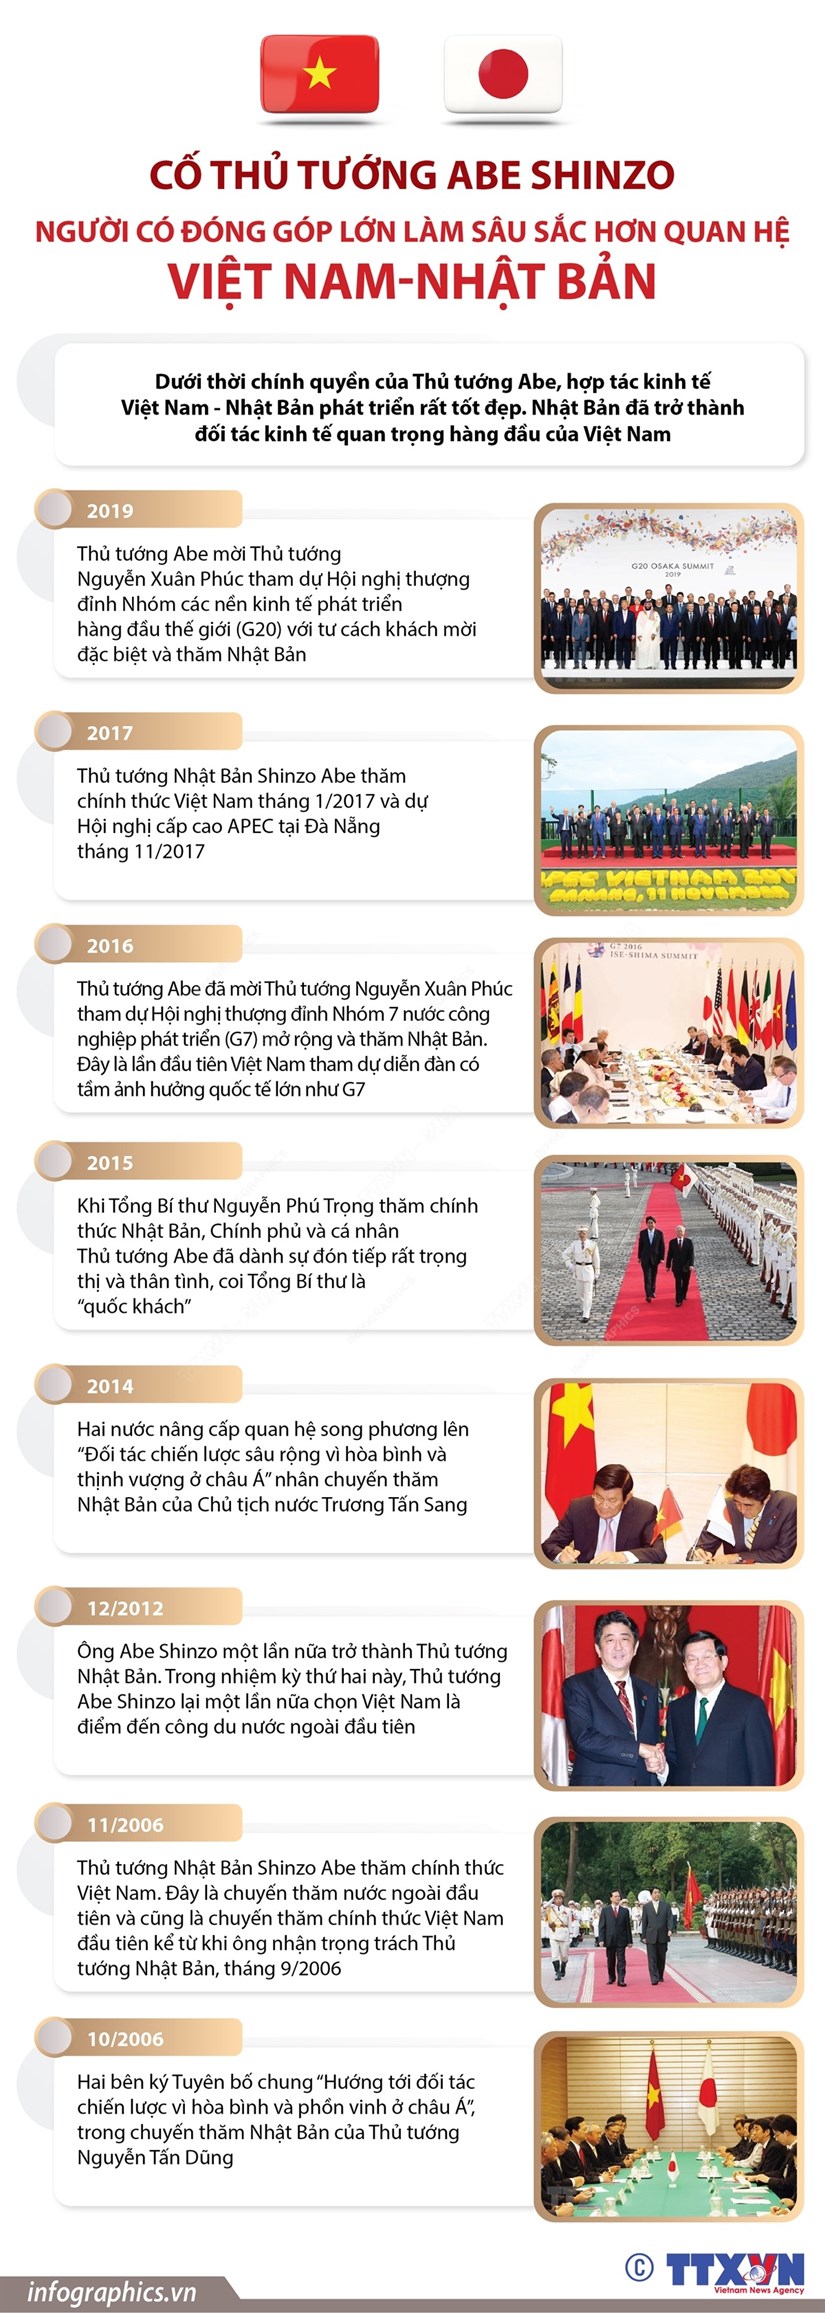 Cố Thủ tướng Abe Shinzo: Người đóng góp lớn trong quan hệ Việt-Nhật